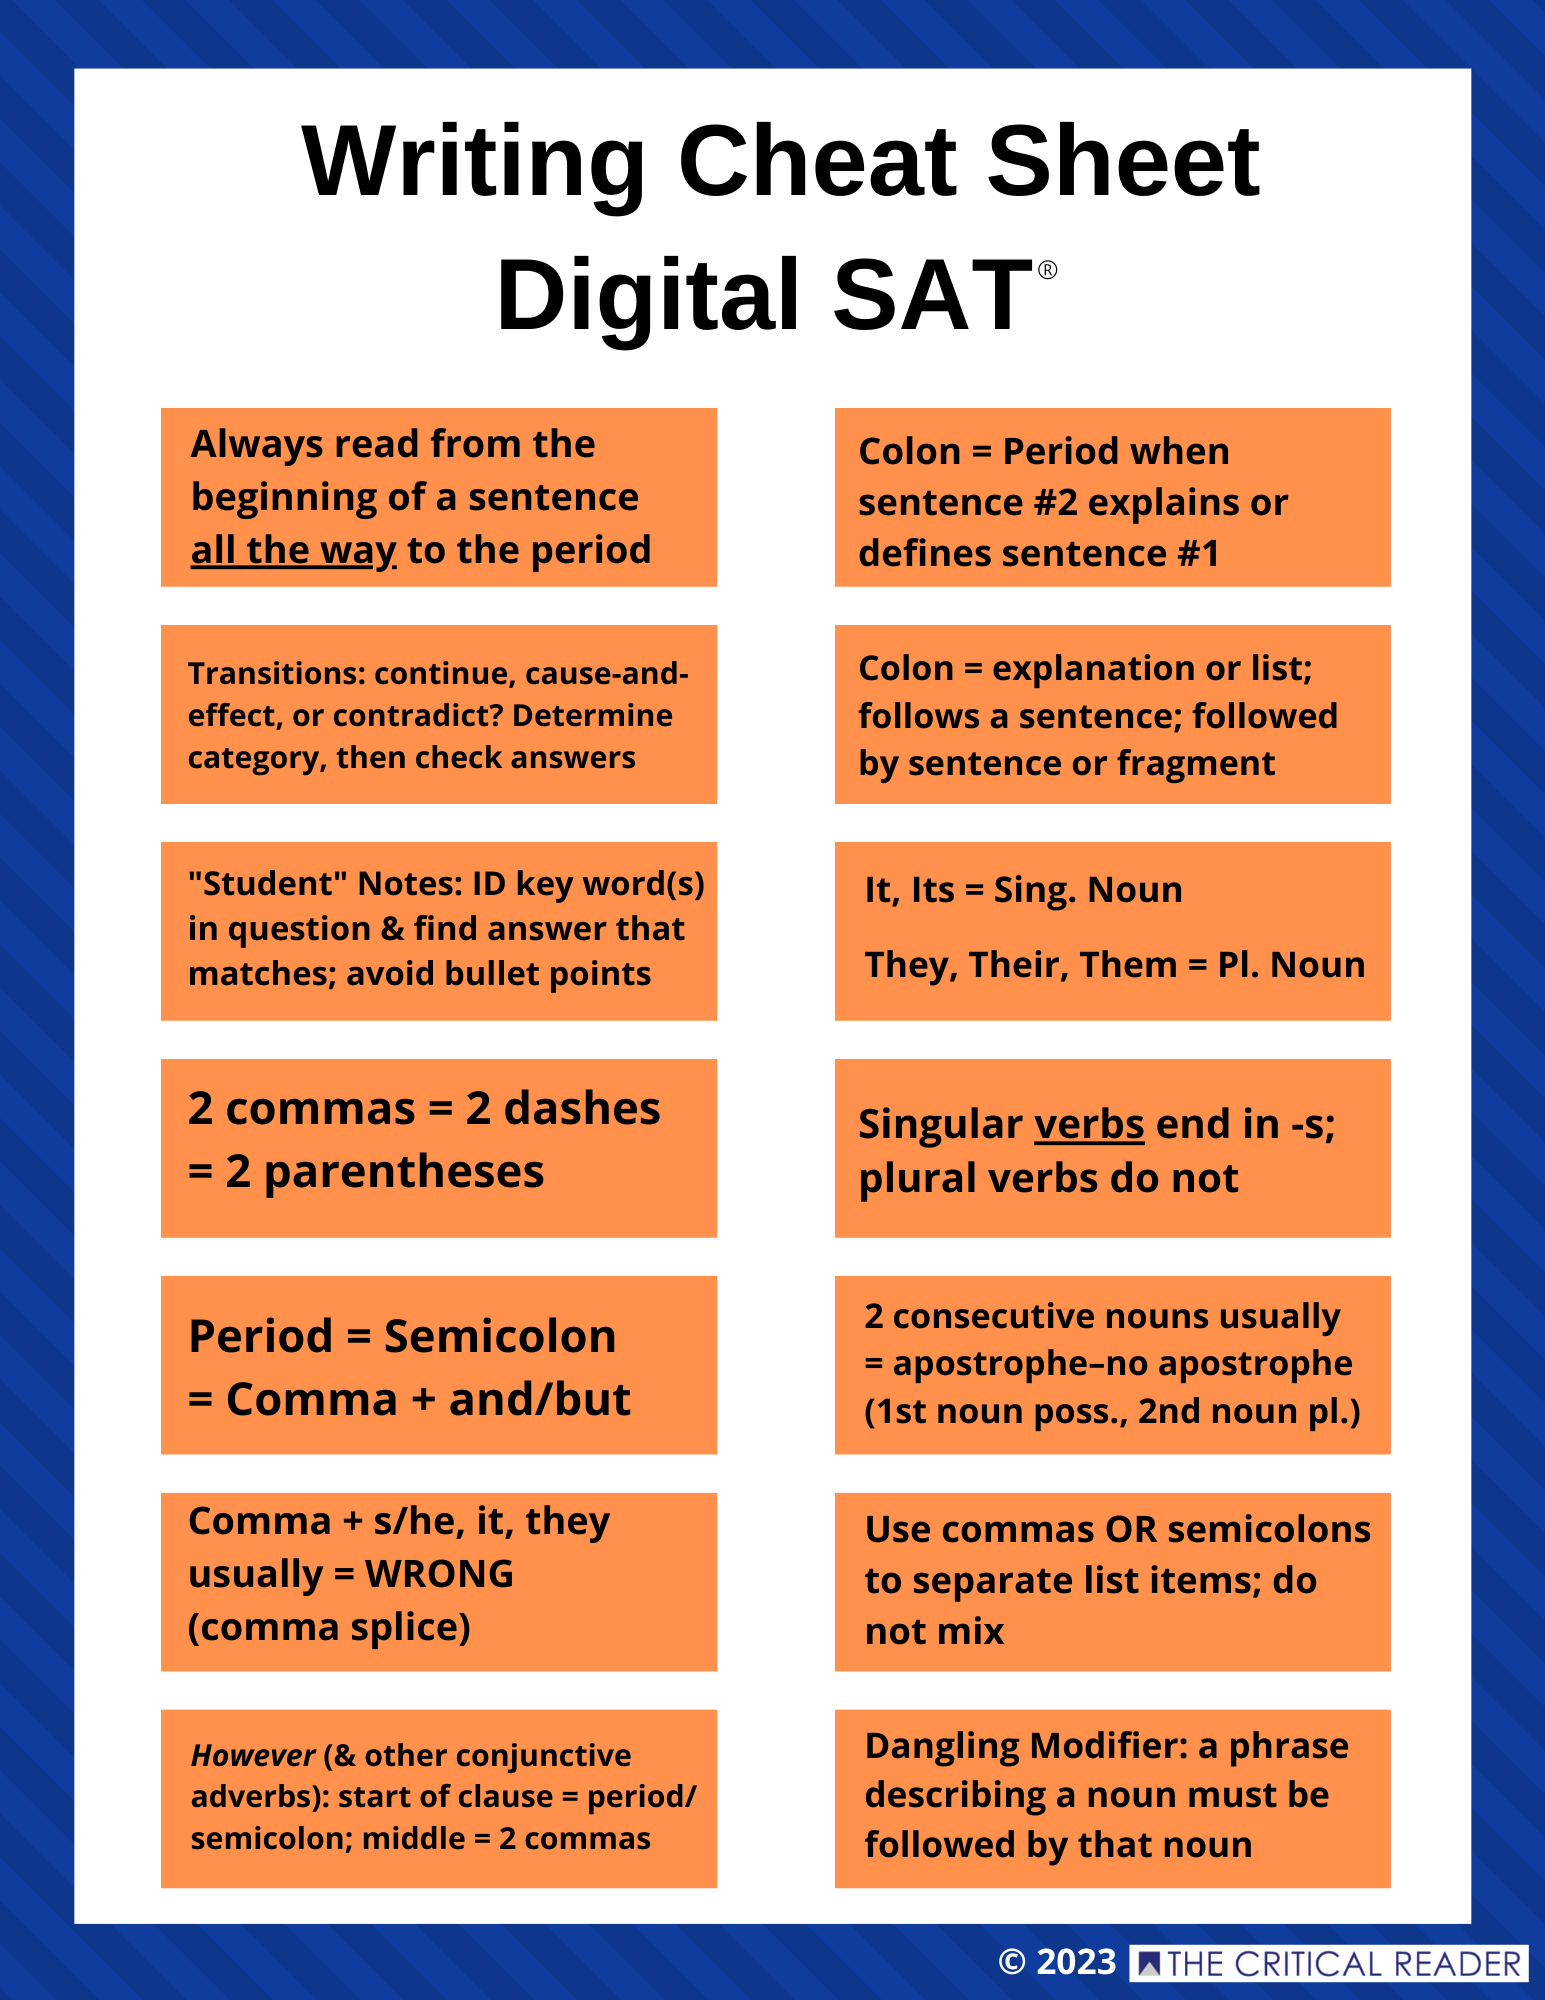 Digital SAT Writing Cheat Sheet The Critical Reader